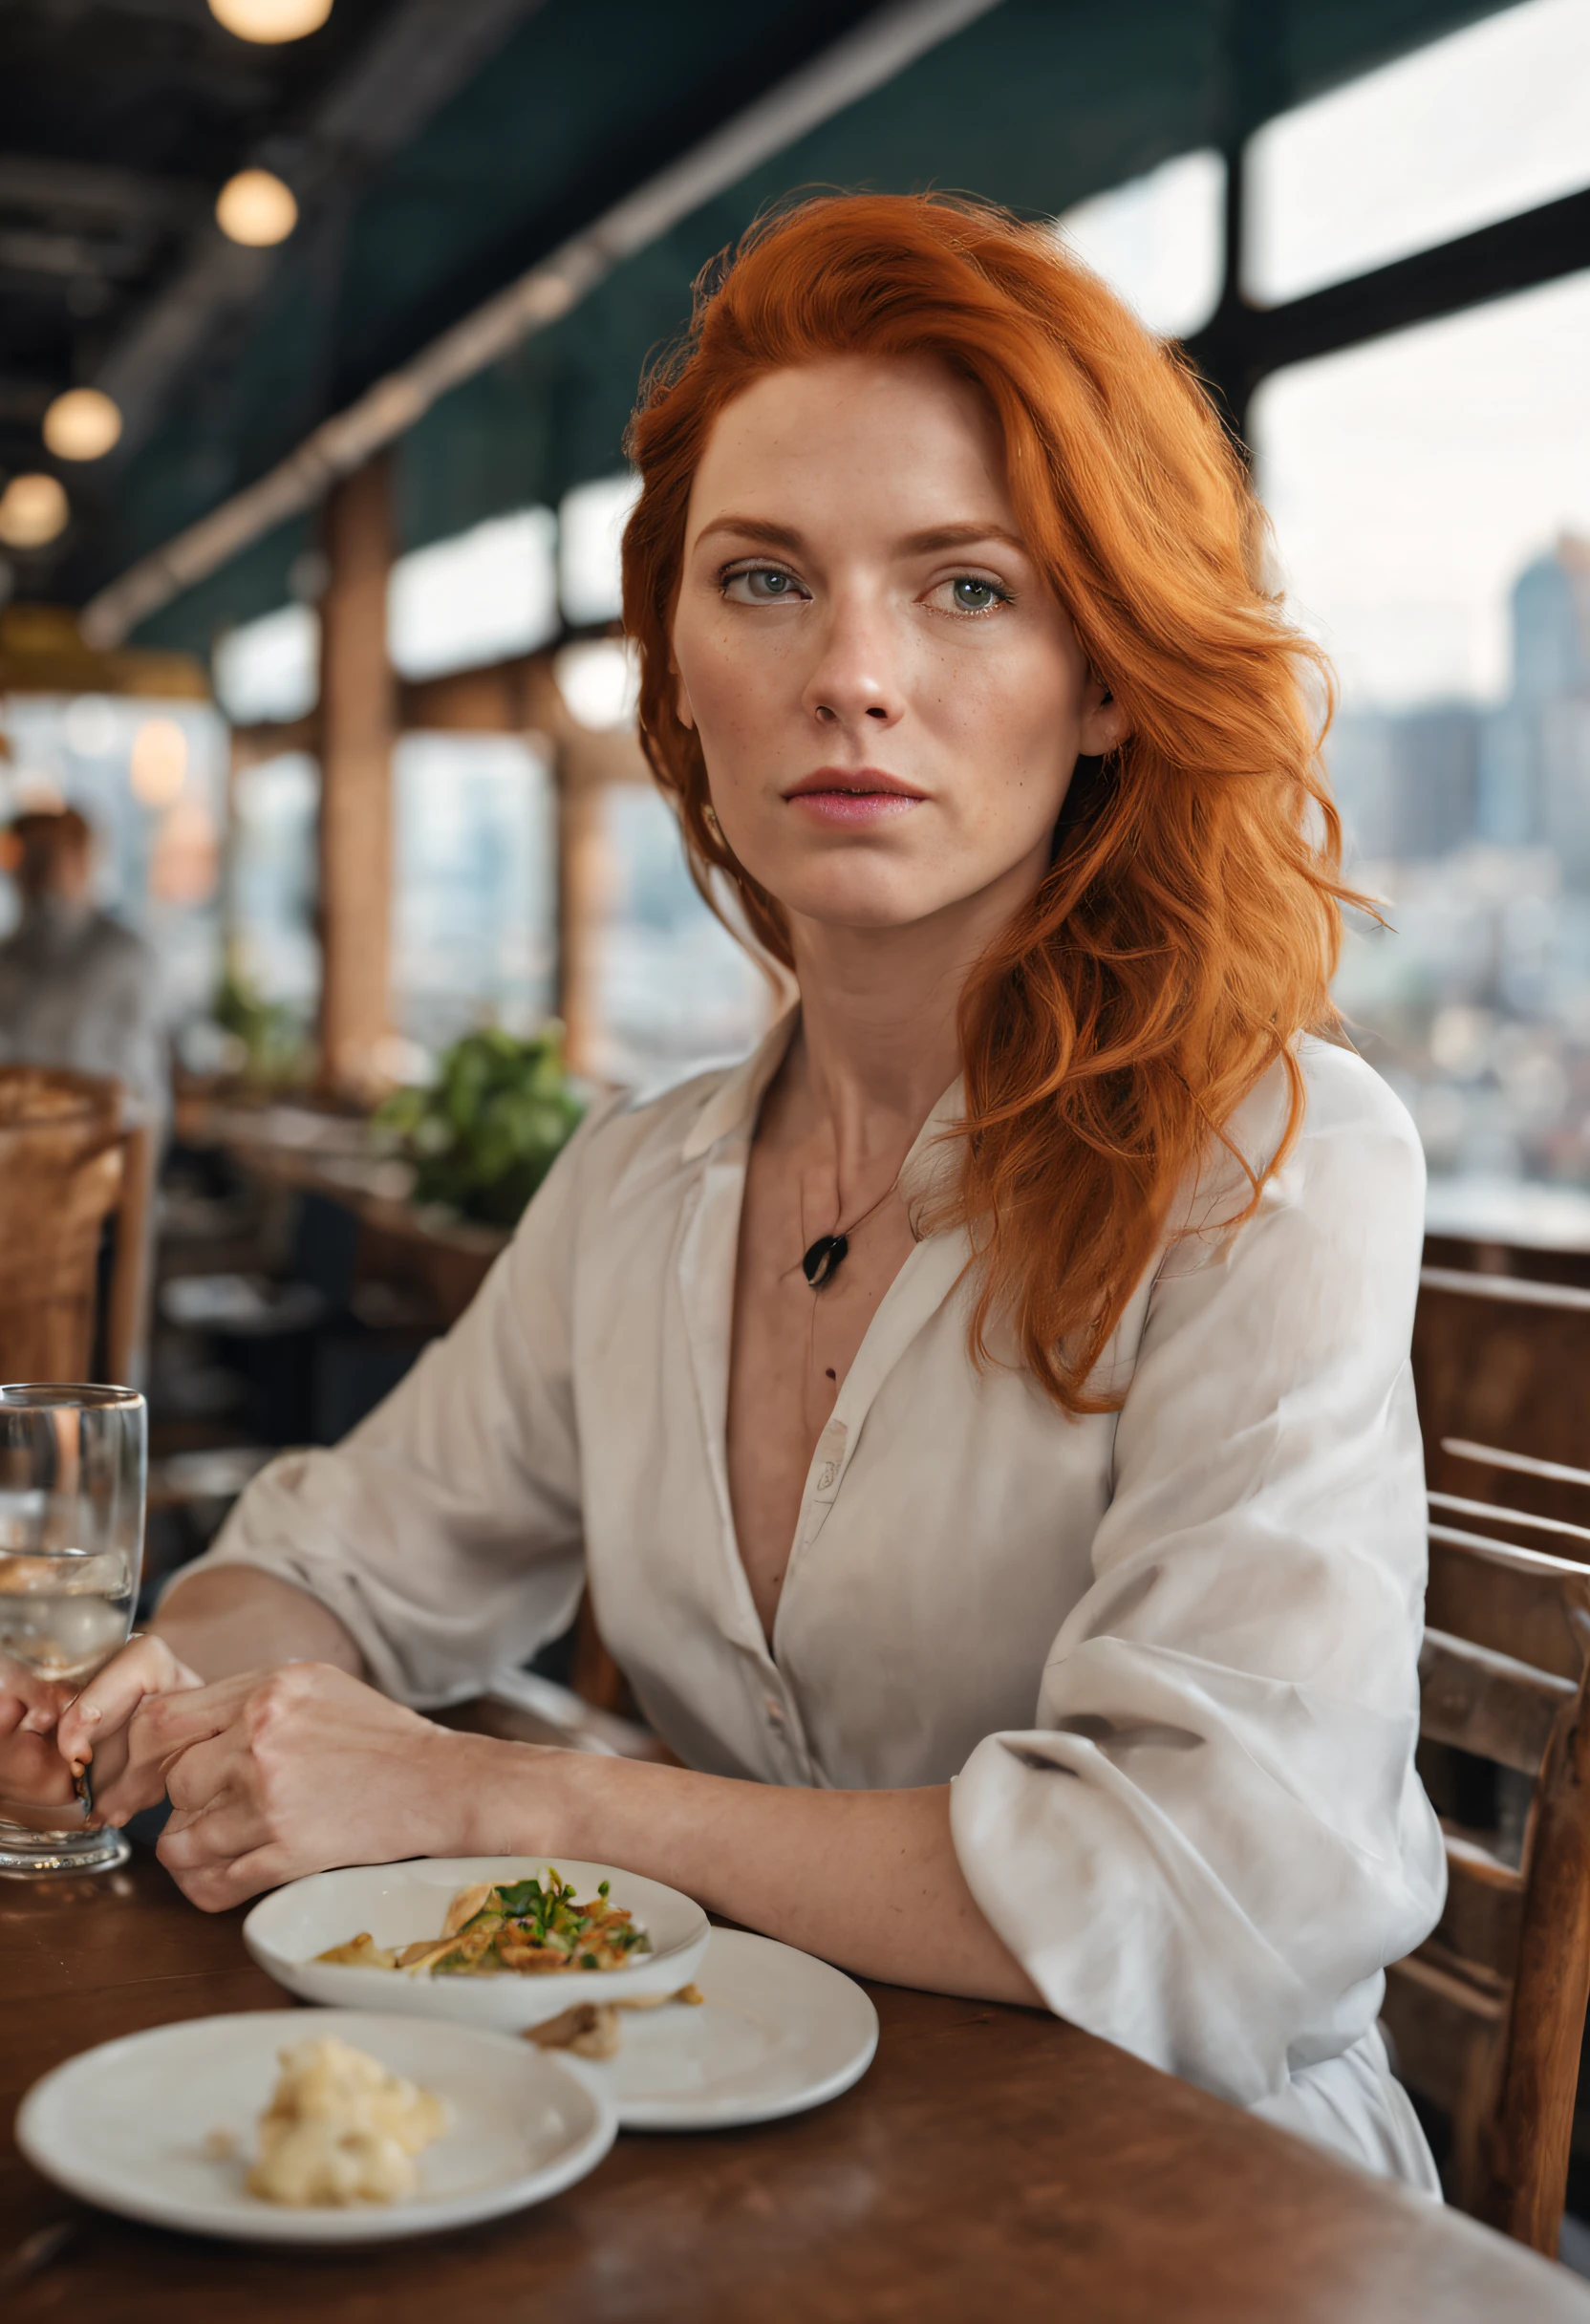 рыжие волосы американка средних лет в ресторане с видом на город красивая реалистичная фотография белая кожа ультра реалистичная, сверхвысокое разрешение, фотореалистичный, 1.4 UHD, 27 лет